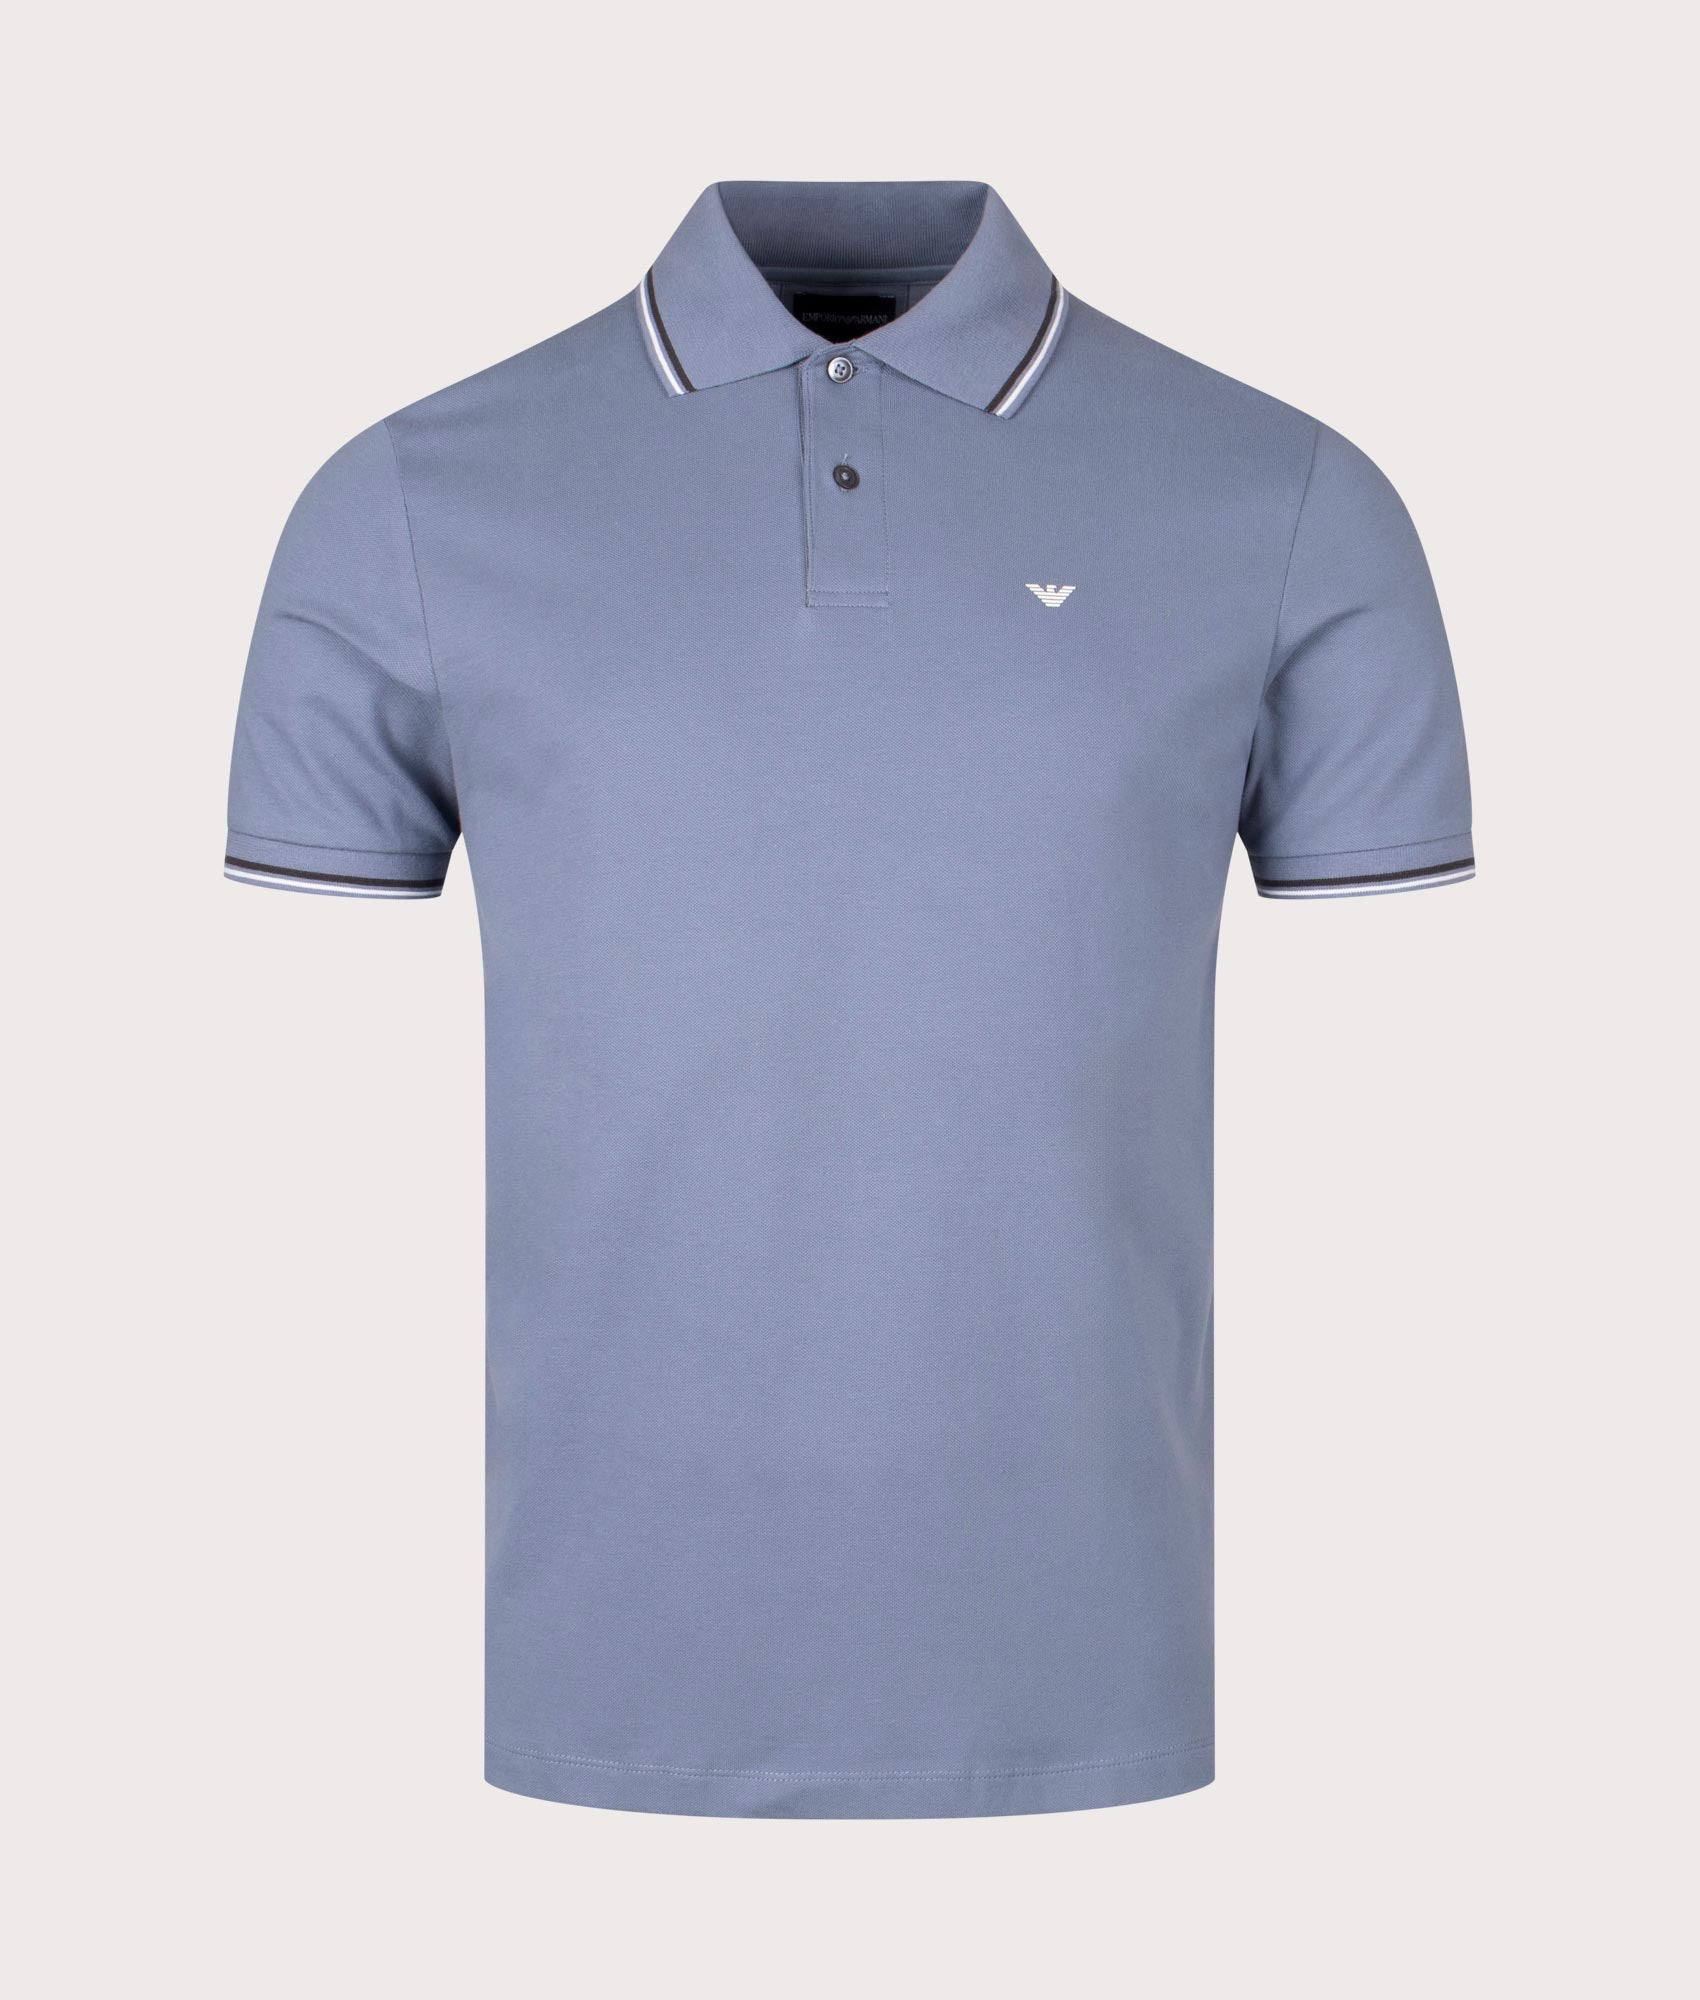 Emporio Armani Mens Essential Stretch Pique Polo Shirt - Colour: 0638 Pietra Focaia - Size: XXL